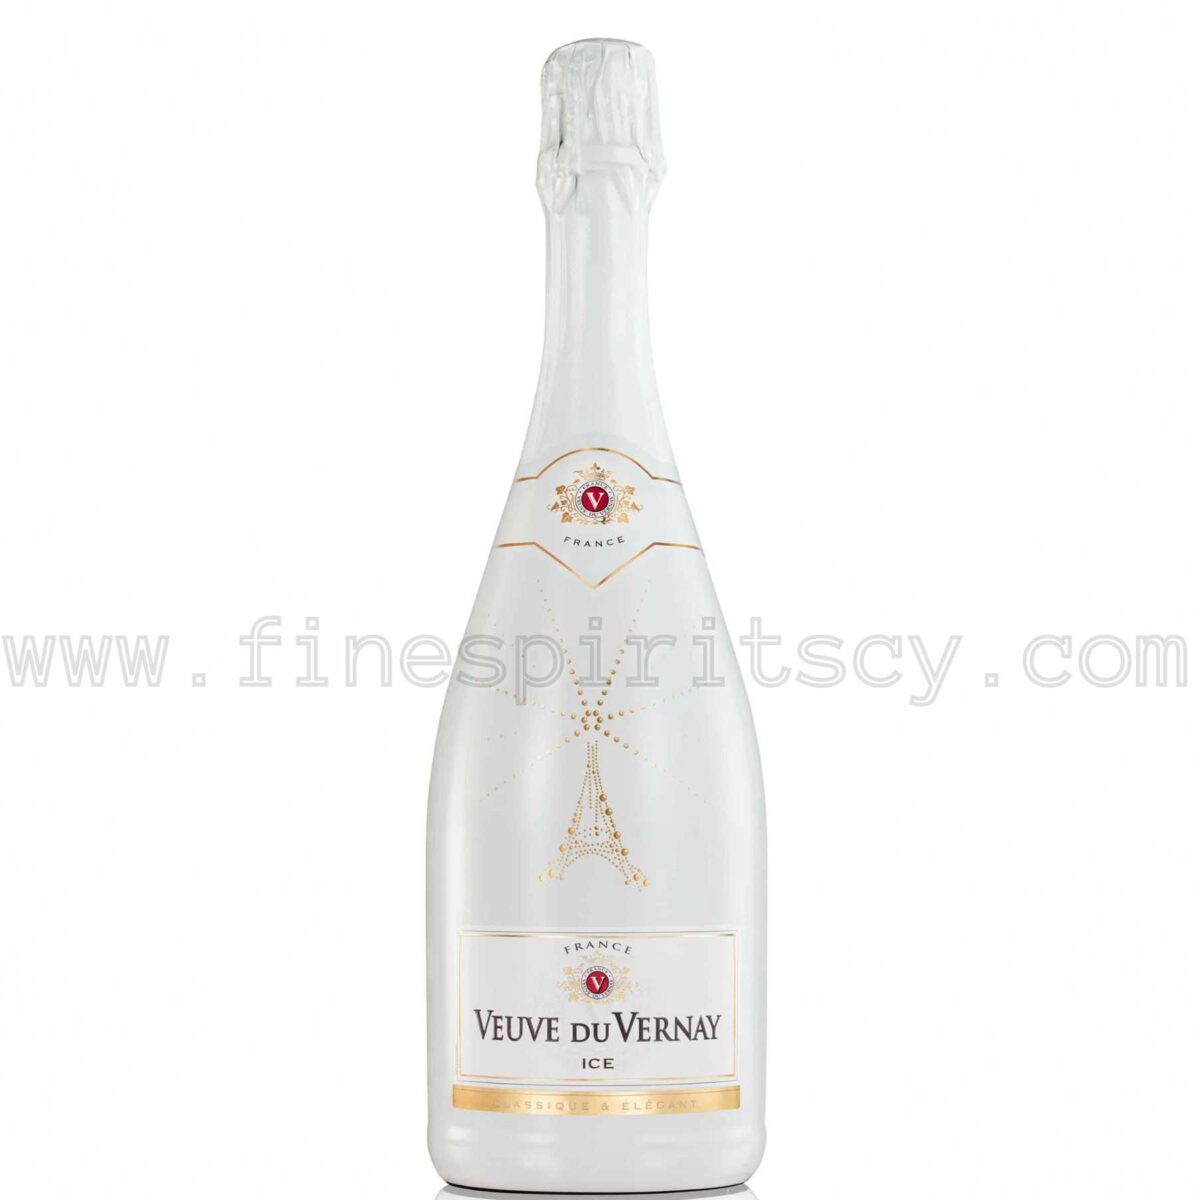 Veuve Du Vernay Ice White France French Wine Elegant Cyprus